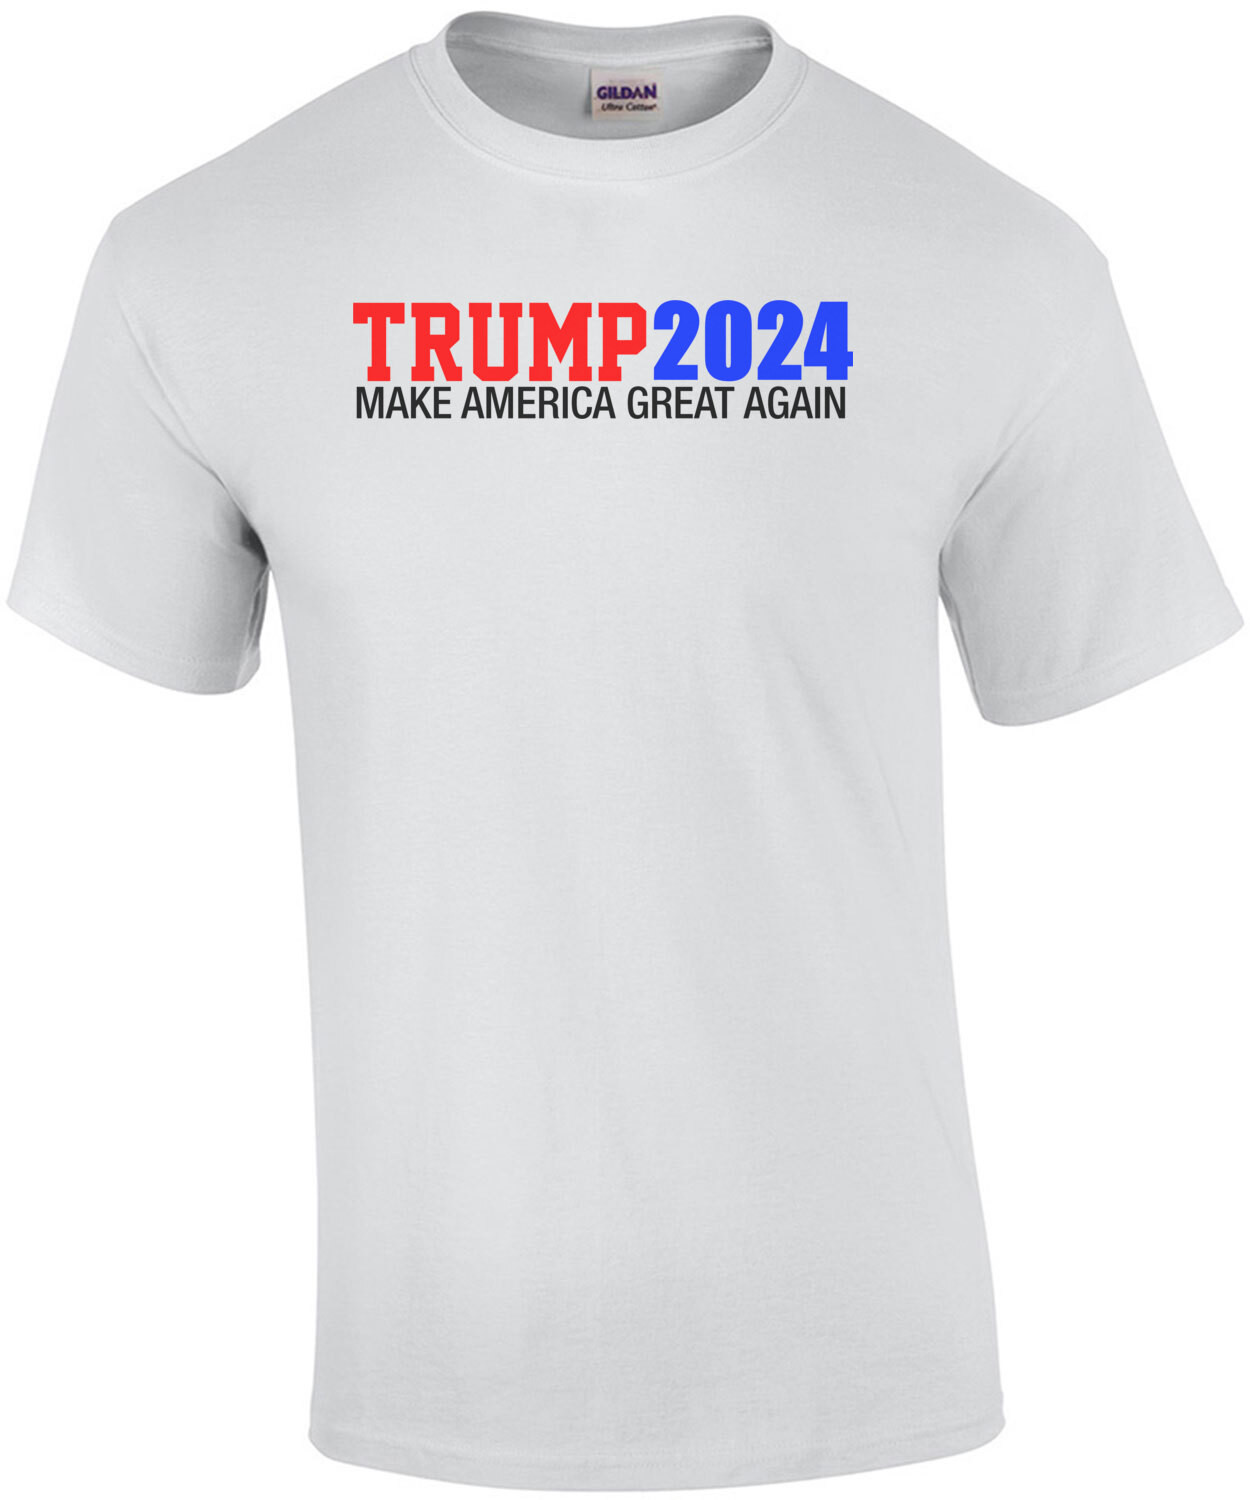 Trump 2024 - Make America Great Again T-Shirt